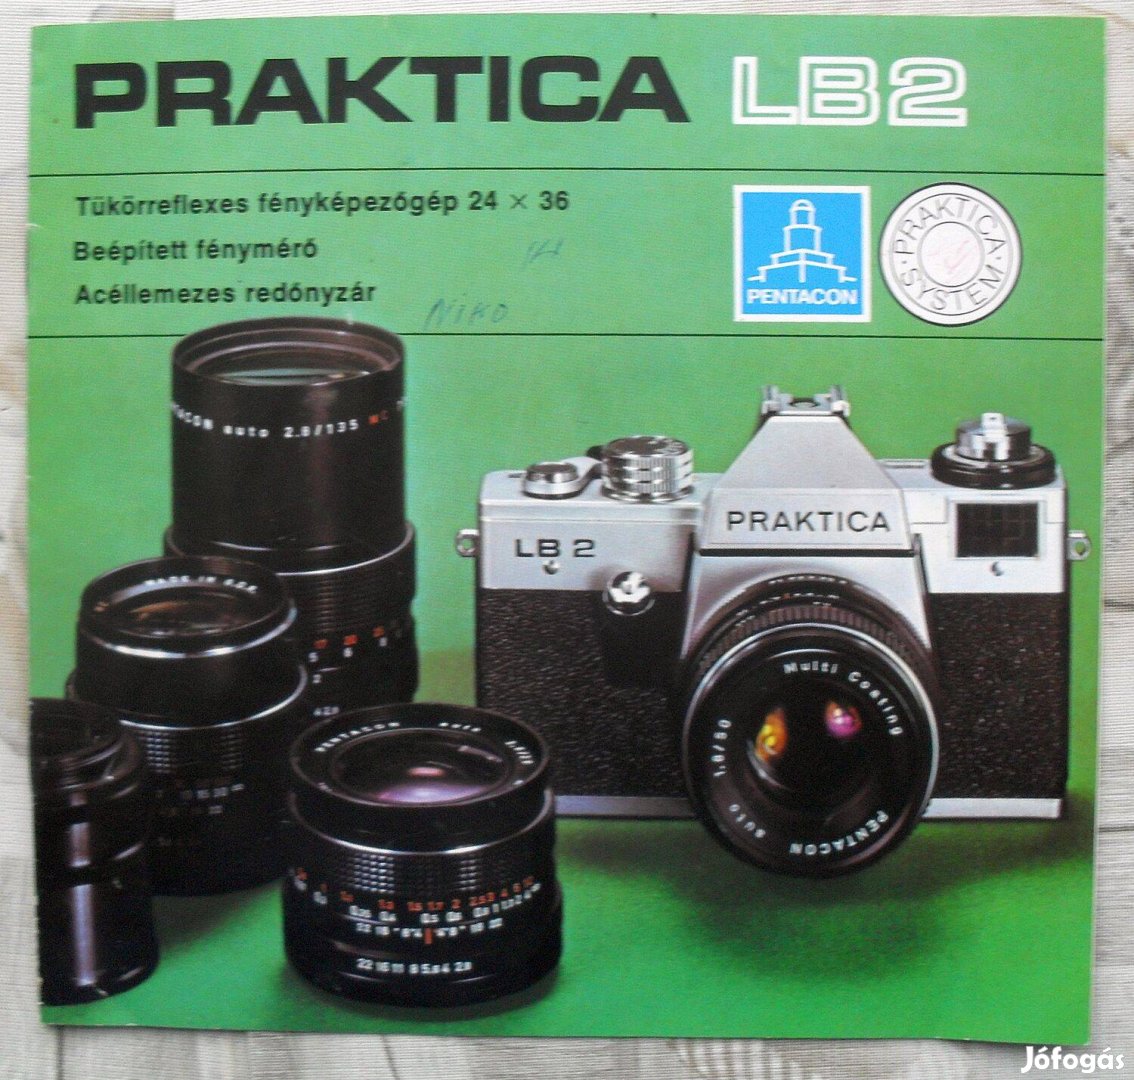 Praktika LB 2 fényképezőgép prospektusa